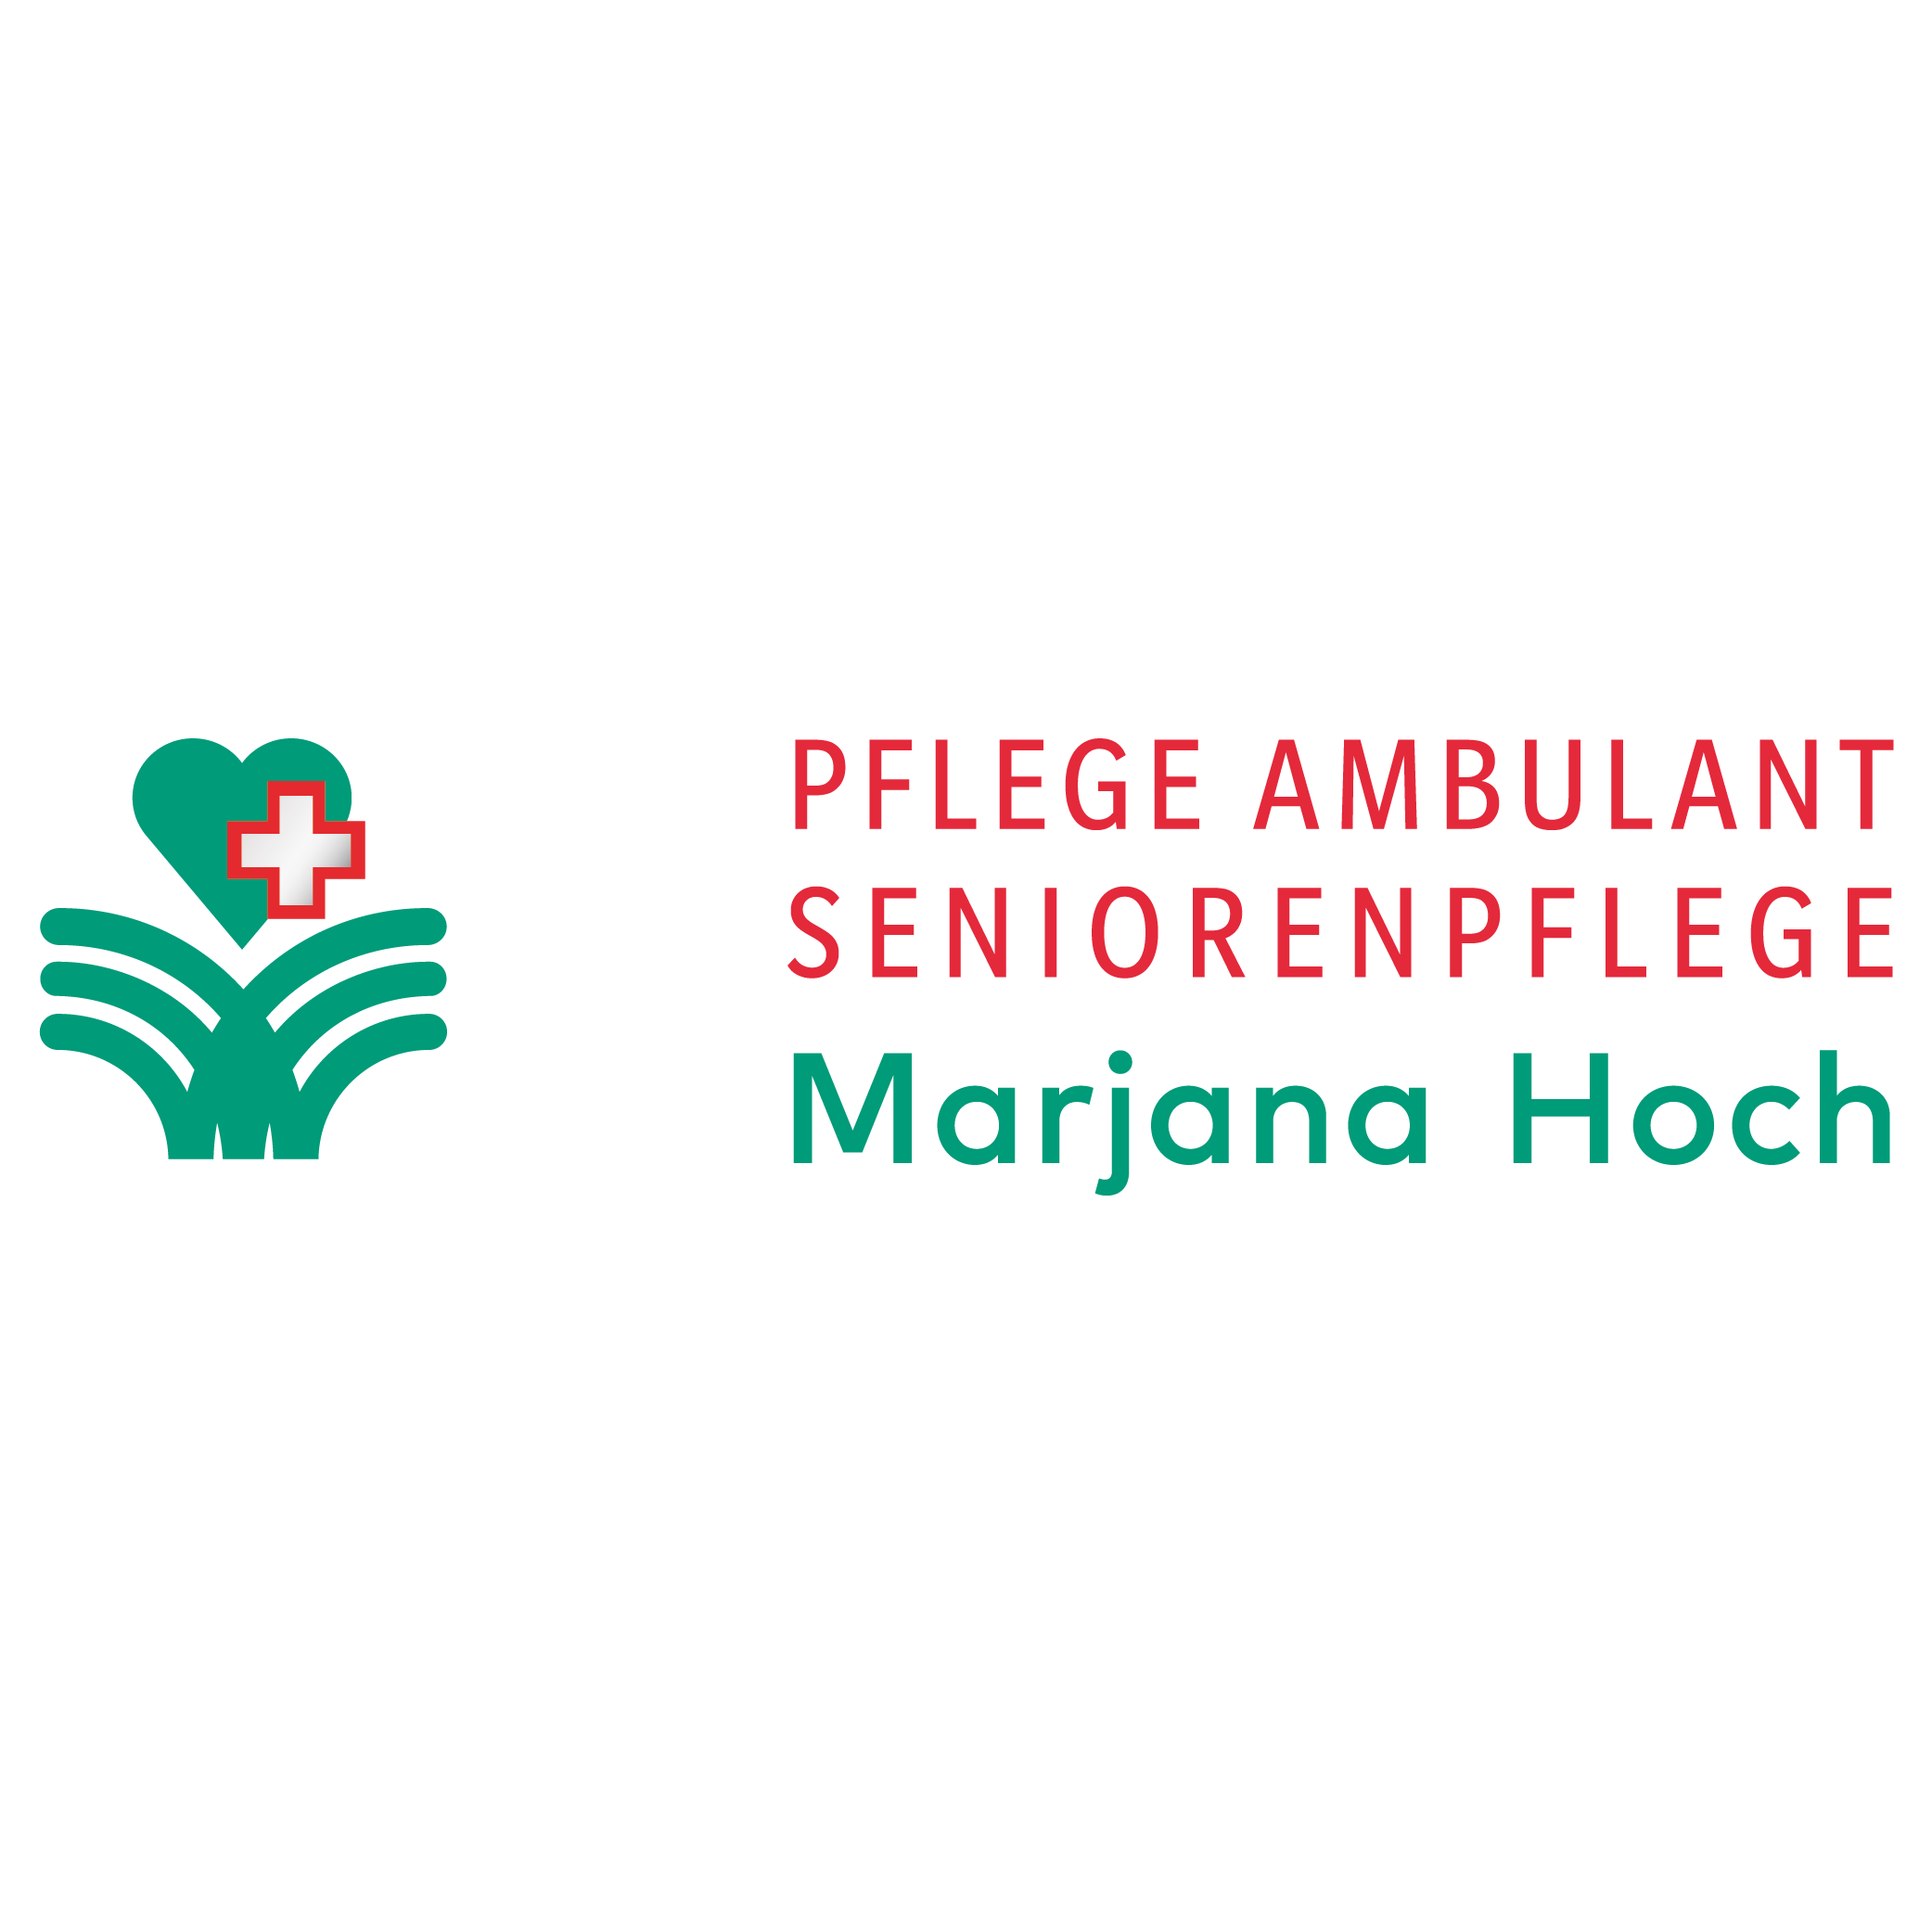 Marjana Hoch-Hotz Pflege Ambulant Seniorenpflege Logo